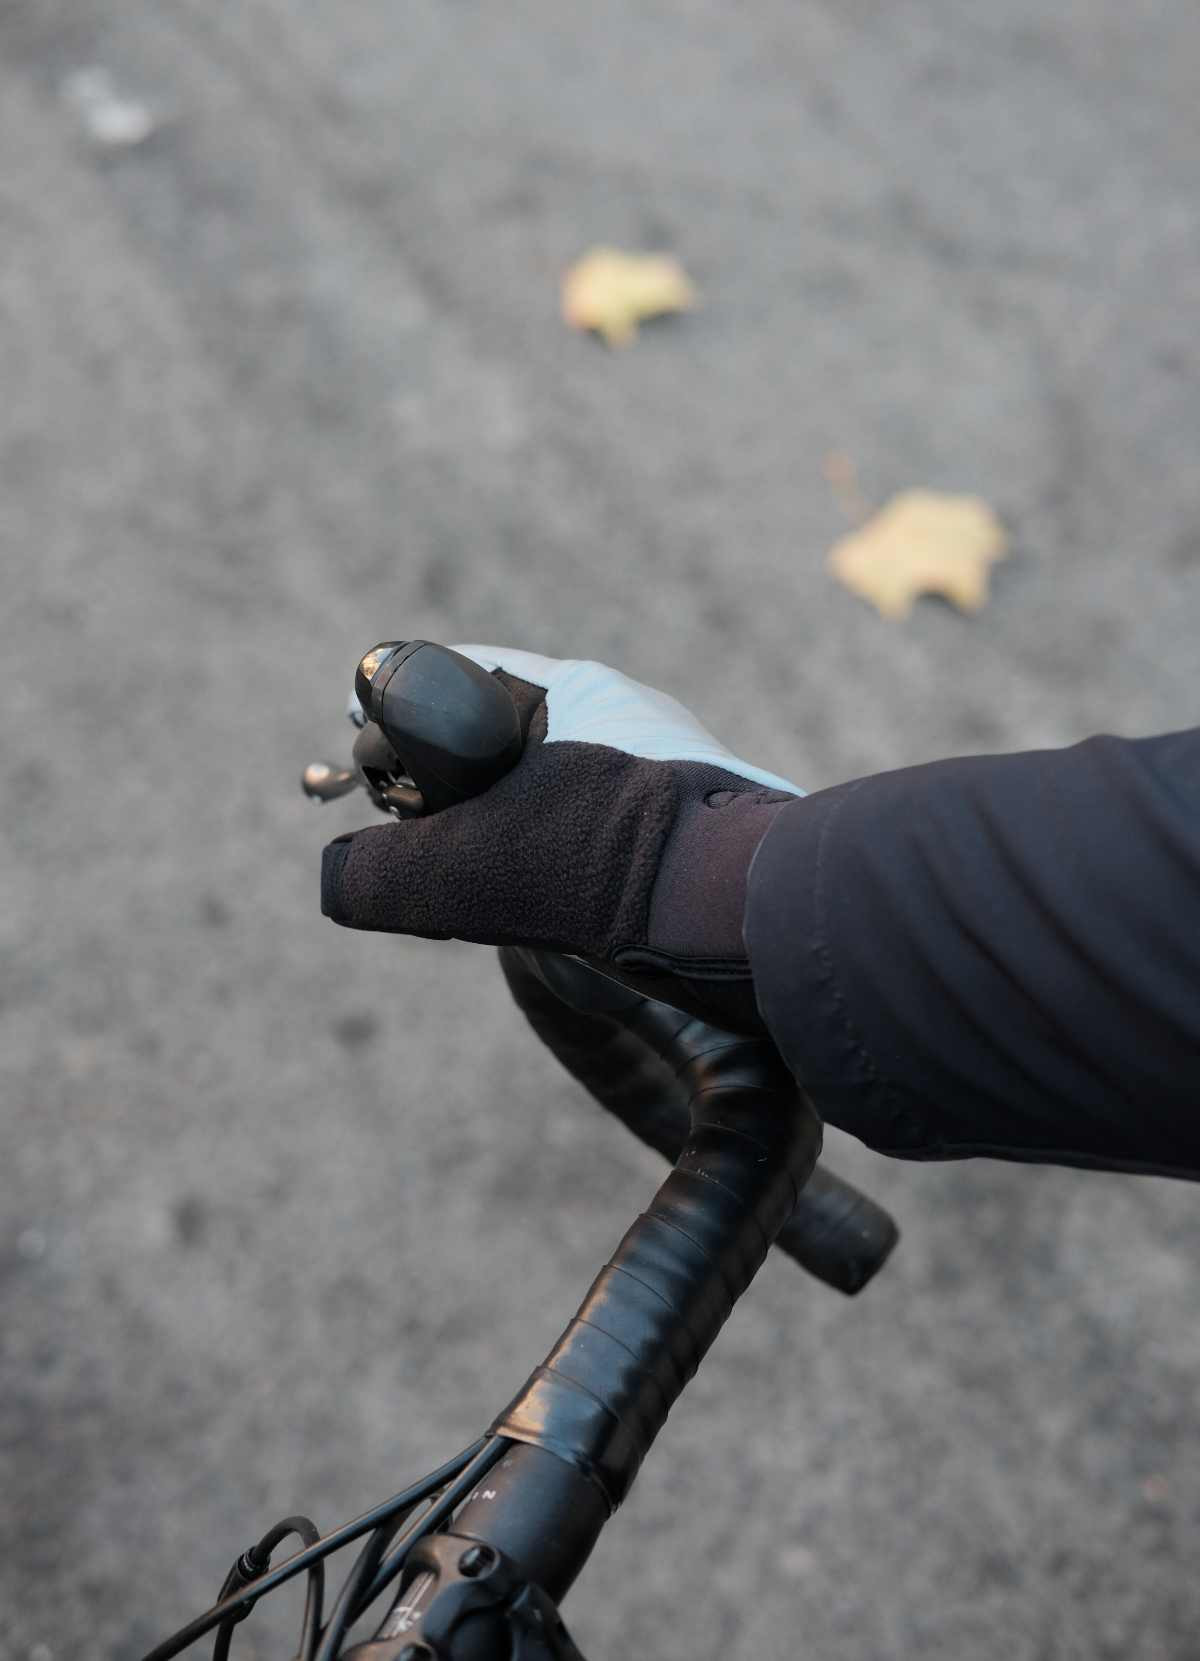 Achetez REICHENTHAL JR. gants vélo hiver enfant ROECKL maintenant